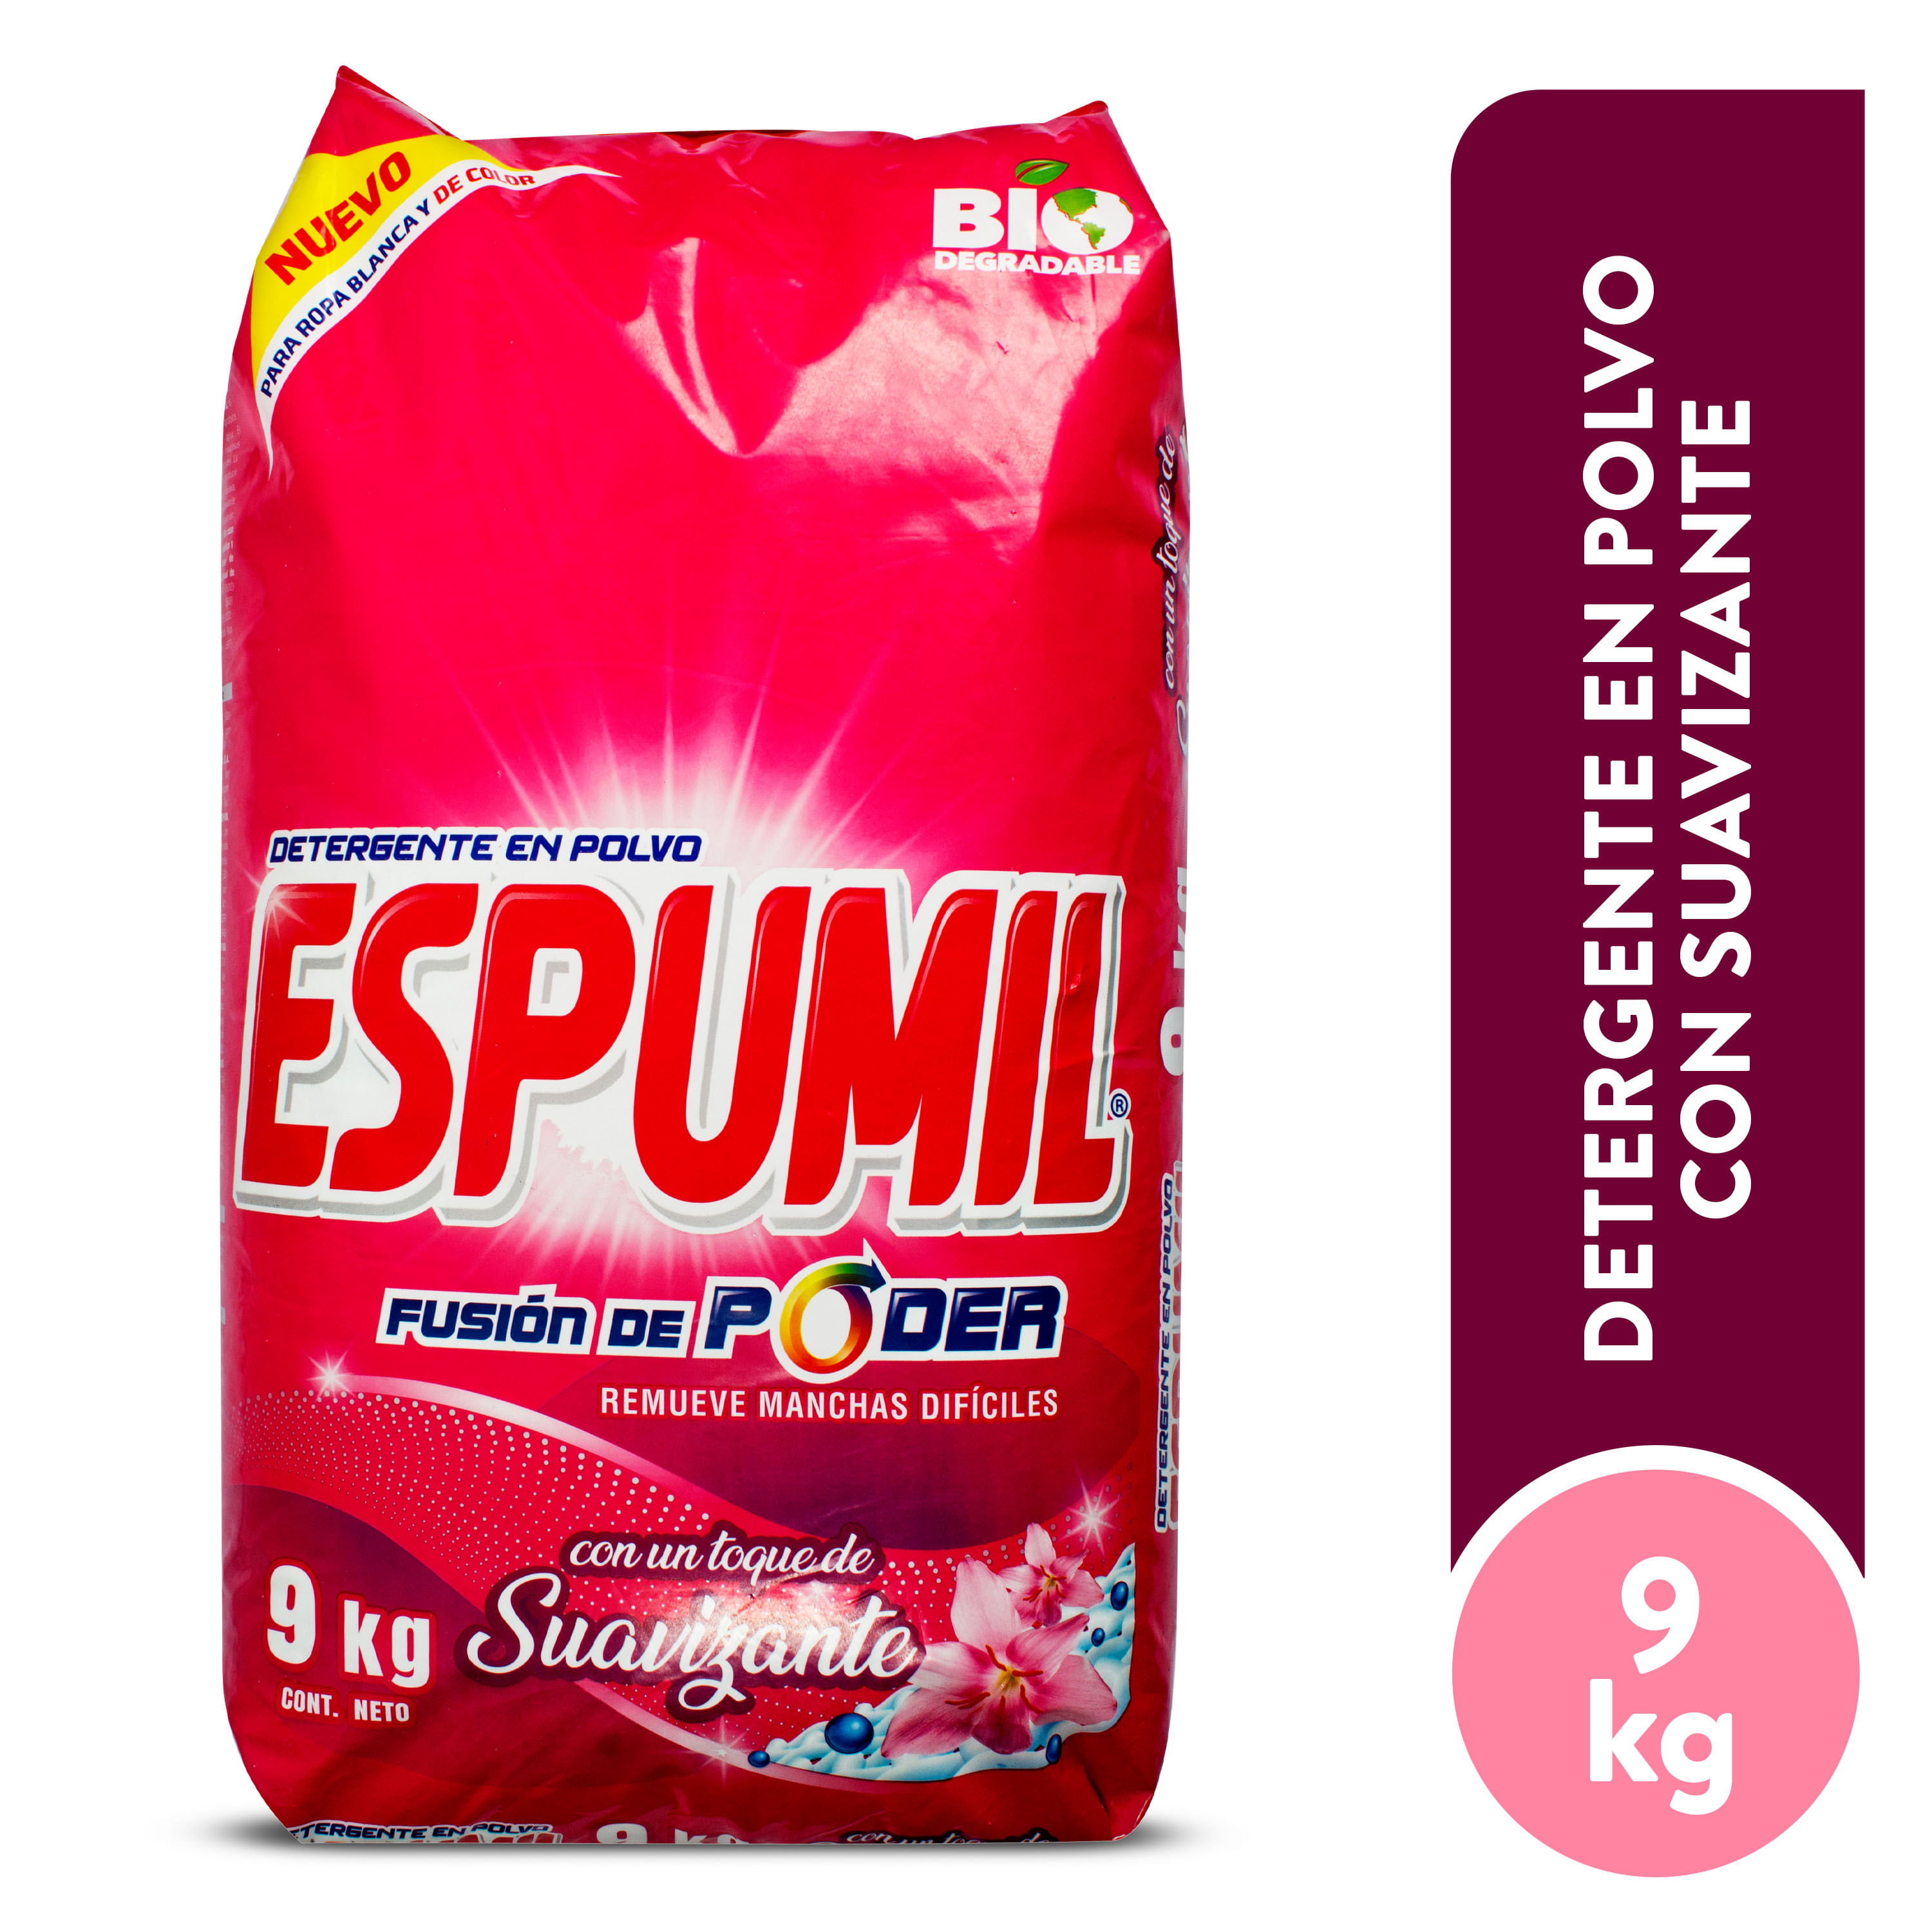 Detergente-En-Polvo-Espumil-Floral-9-Kg-1-32245